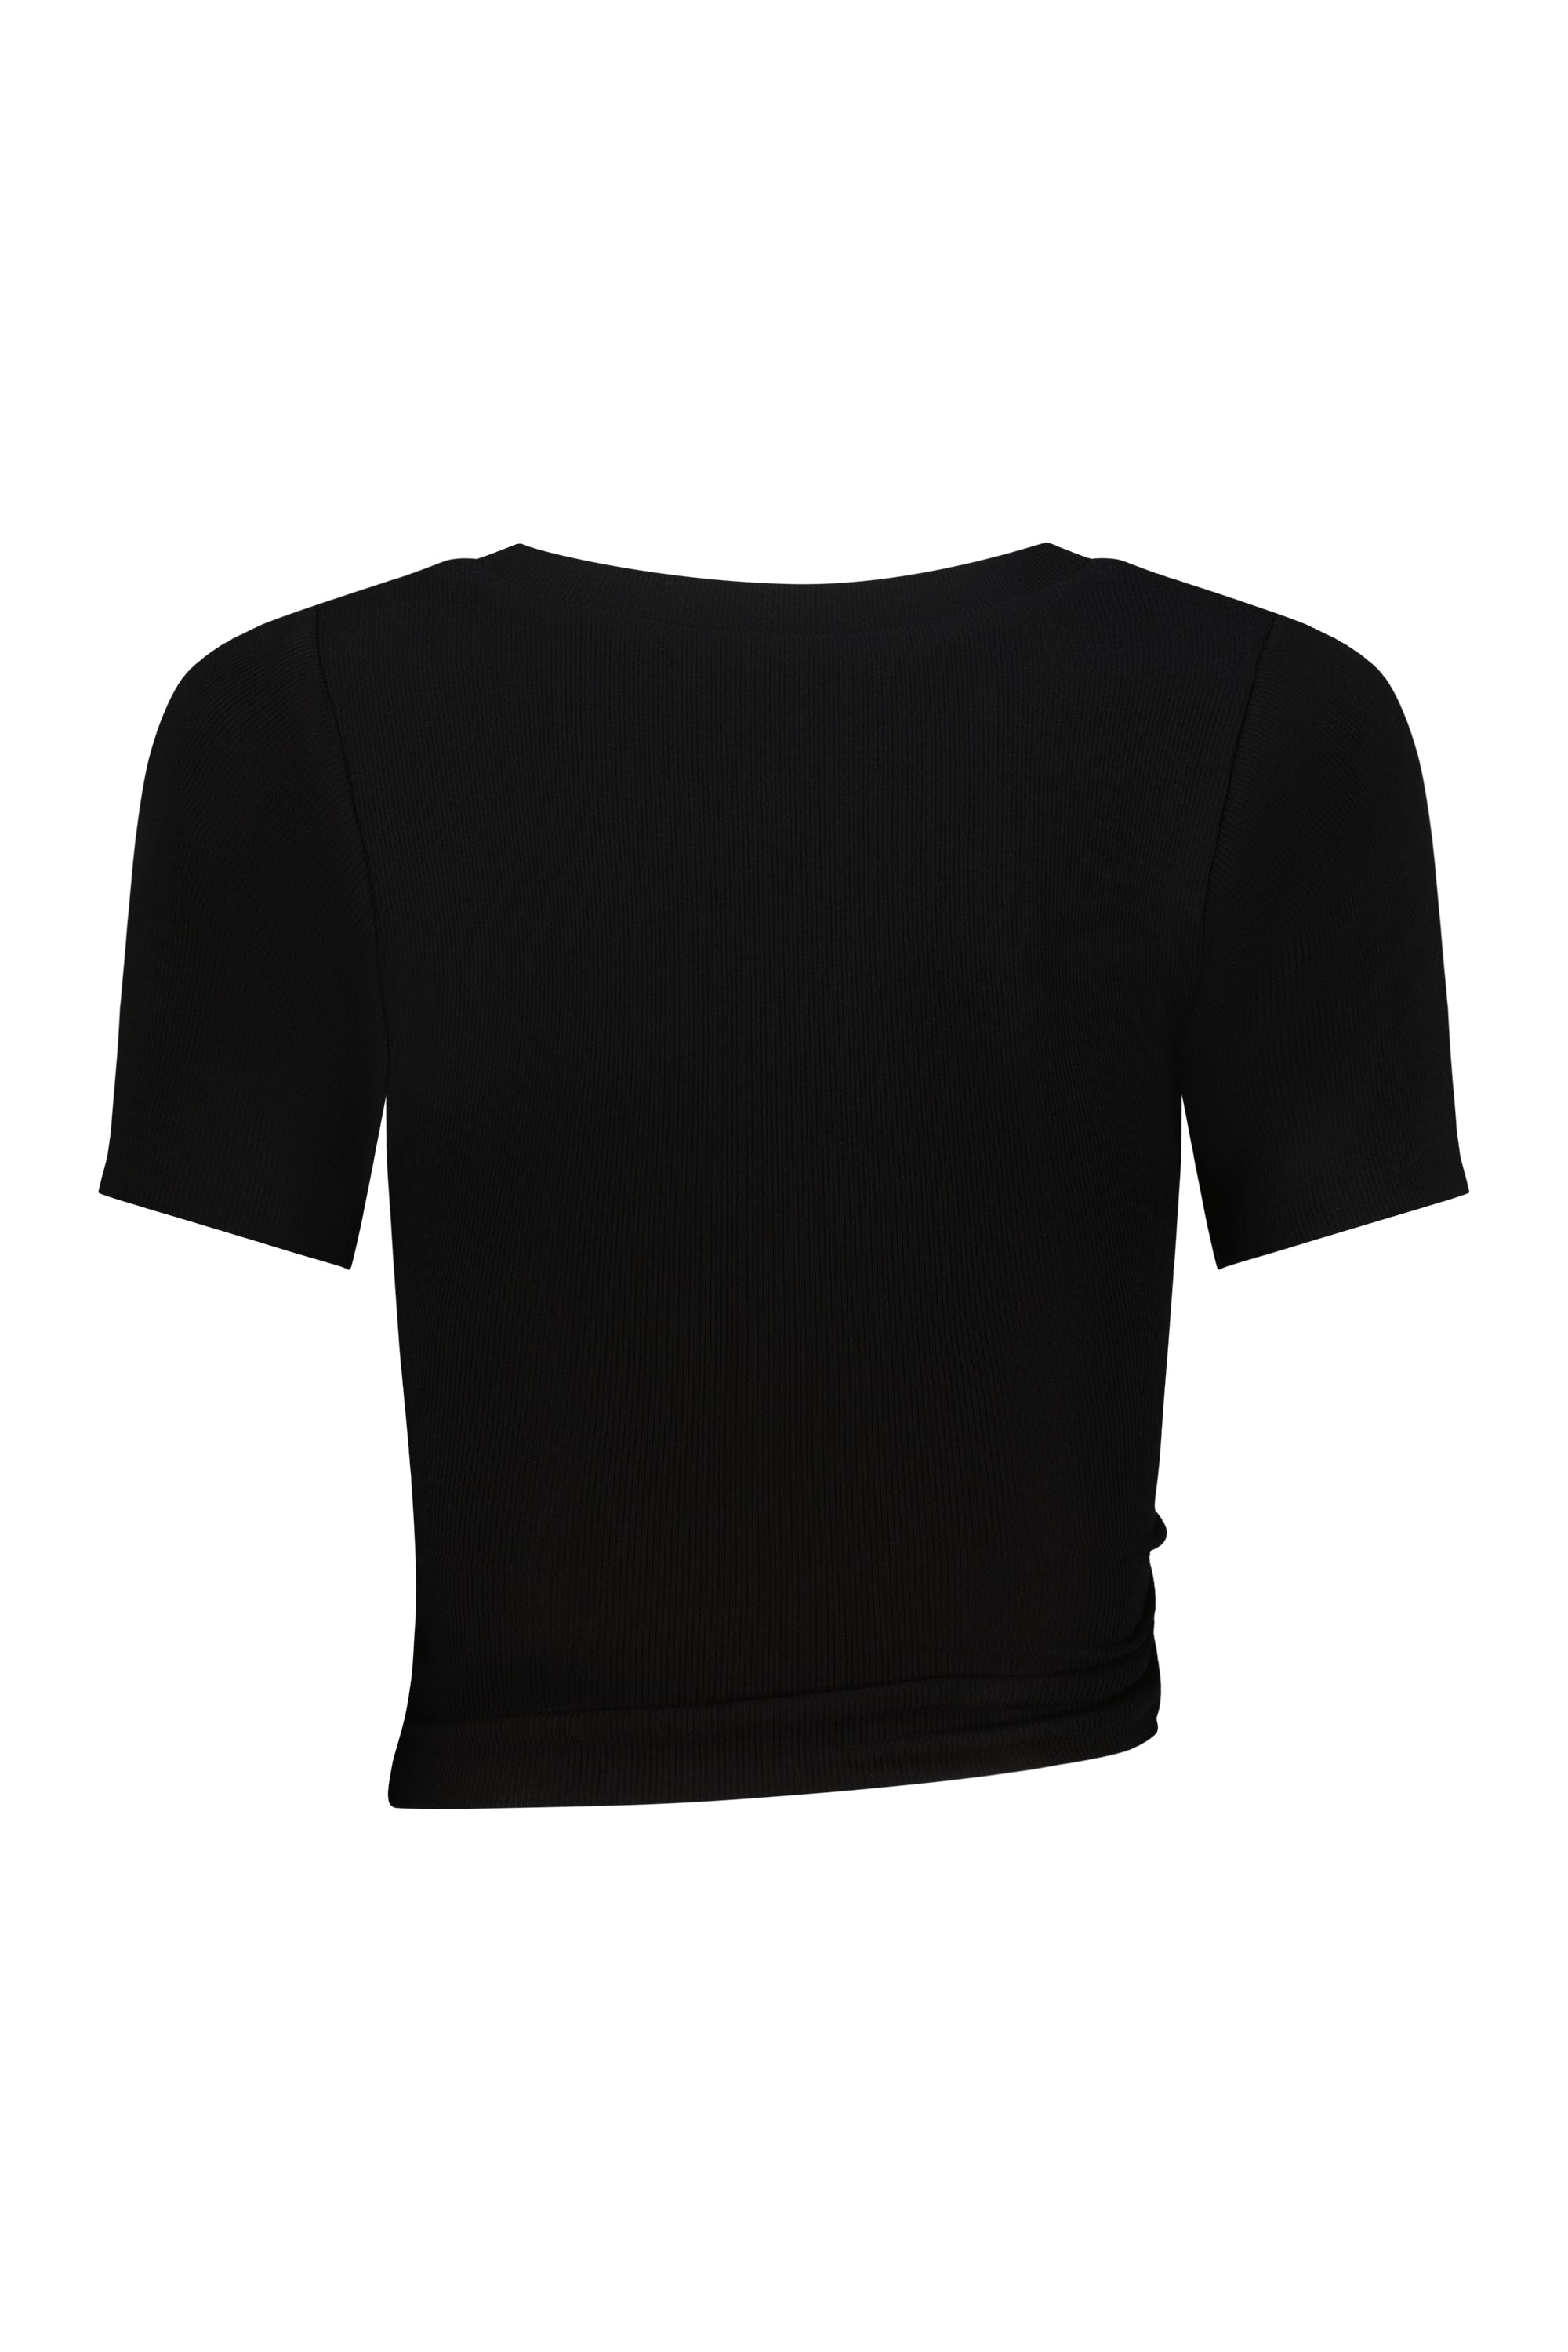 Selene T-Shirt Black